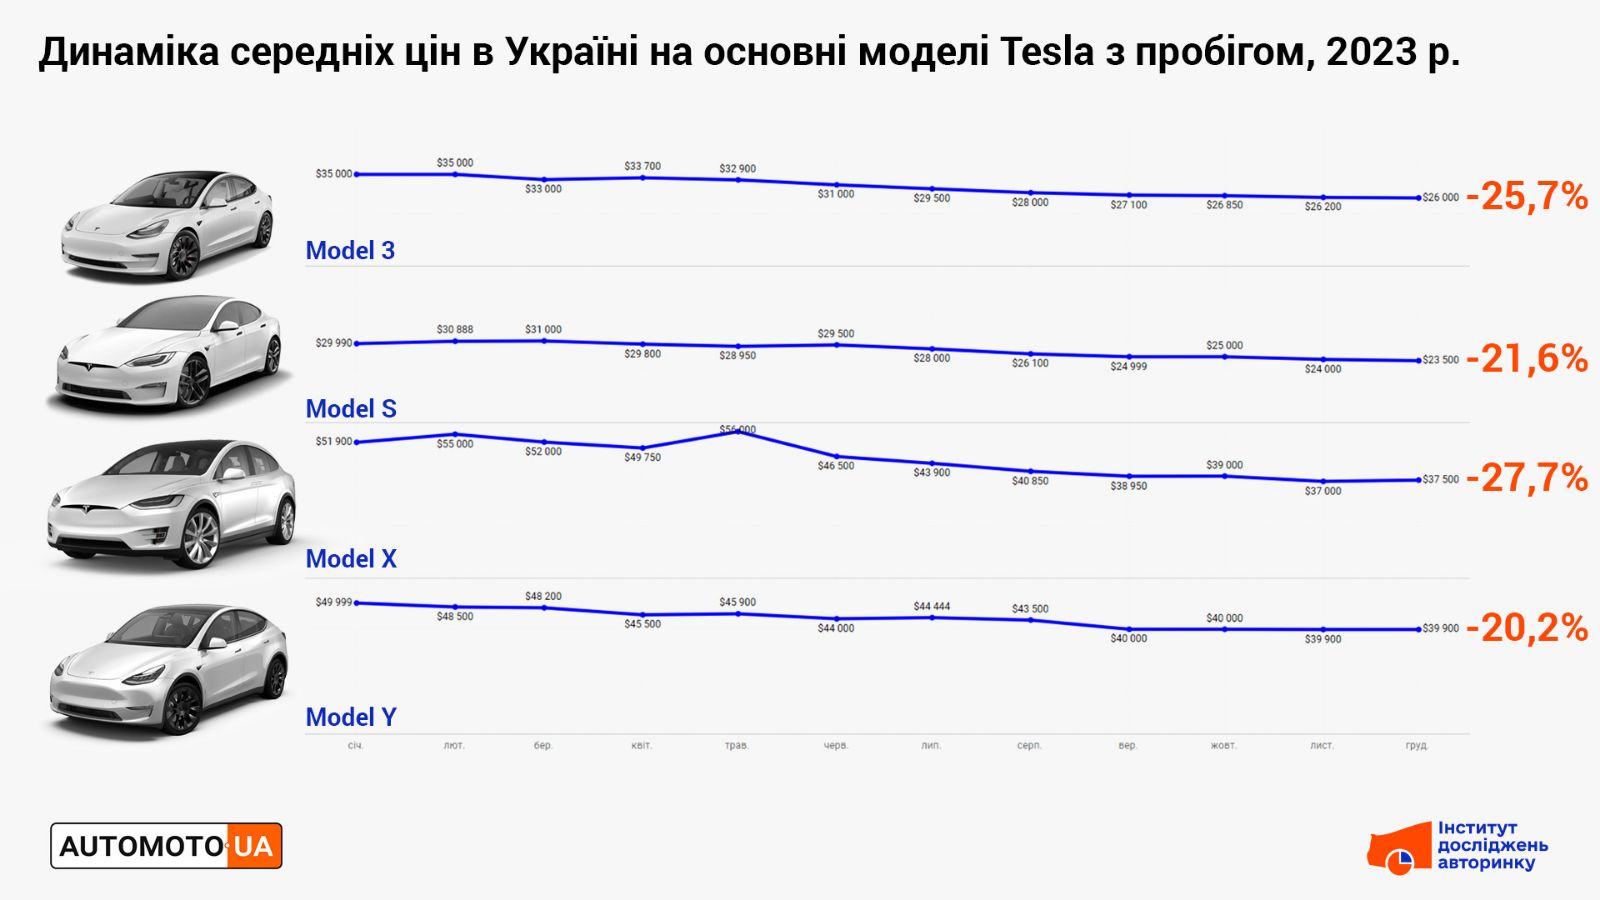 Динаміка середніх цін на вживані електрокари Tesla